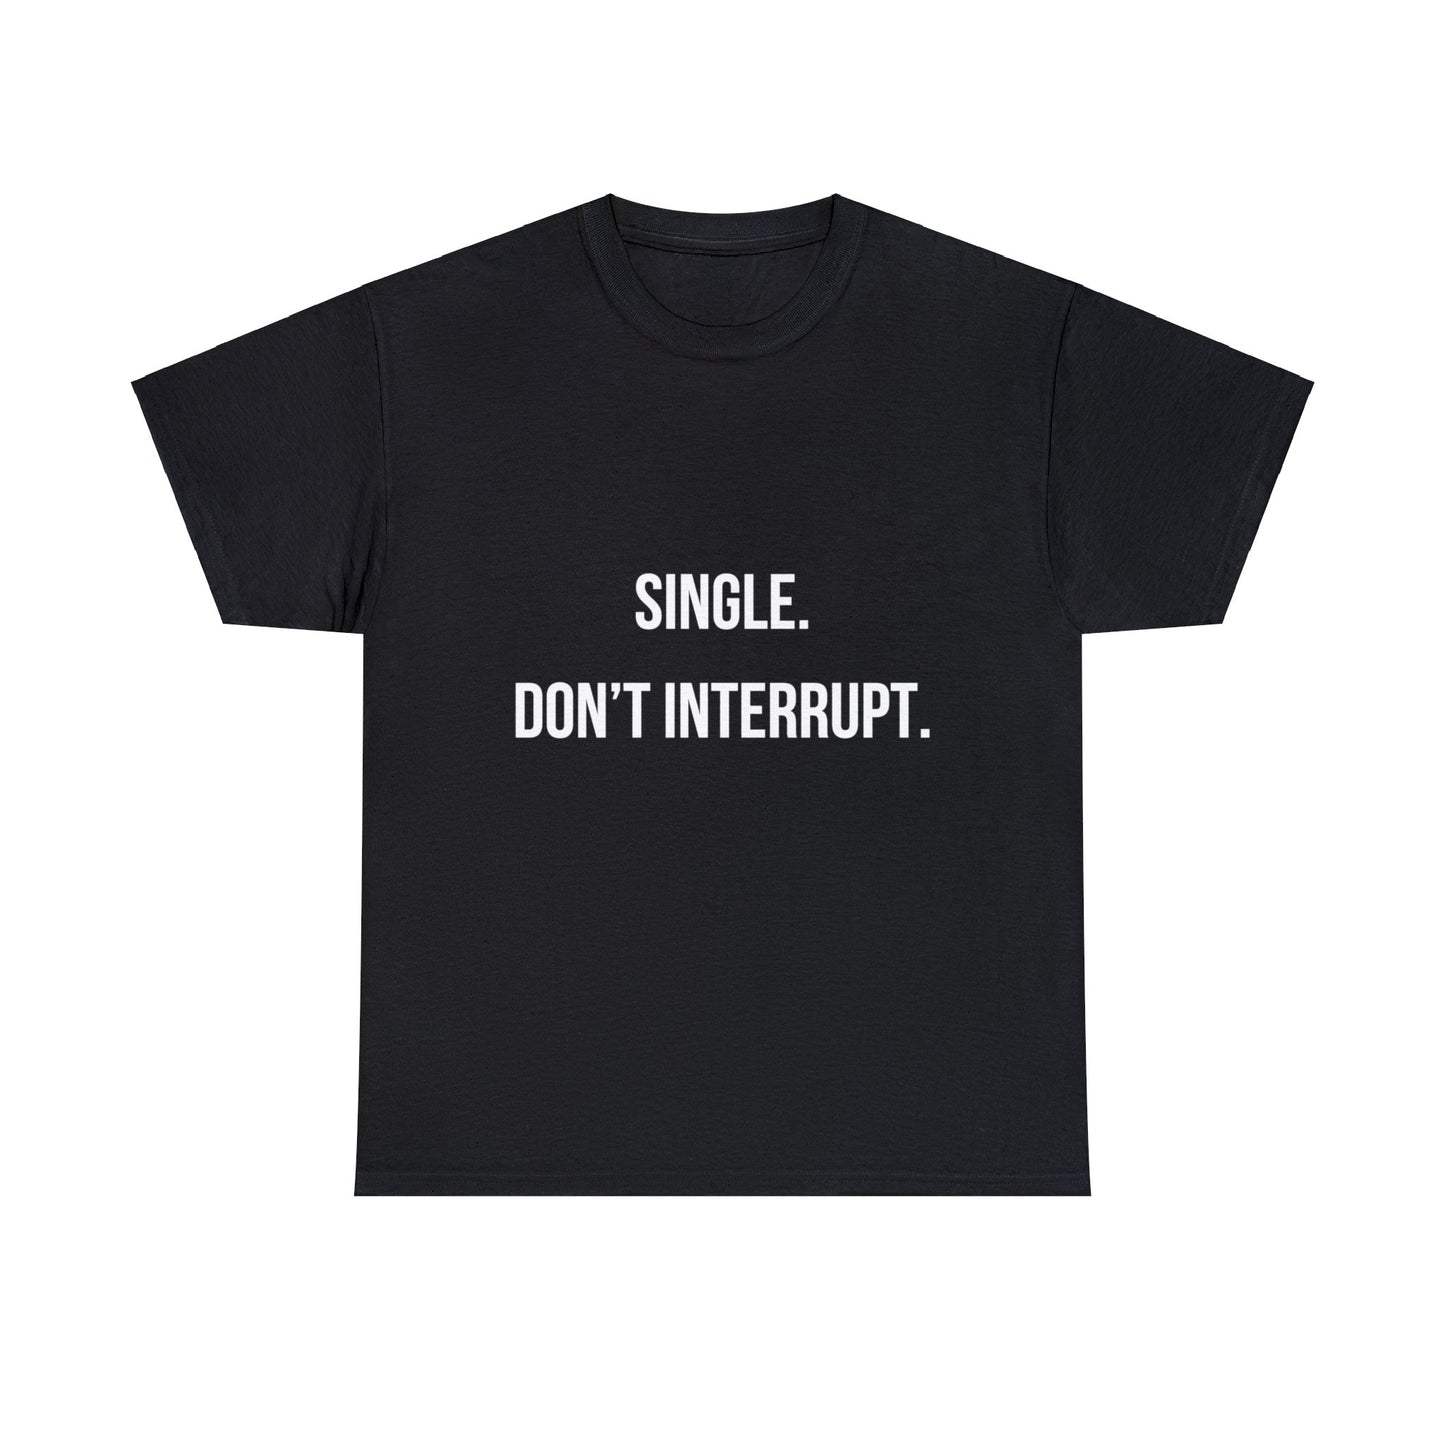 Unisex Heavy Cotton Tee: "Single. Don't Interrupt."